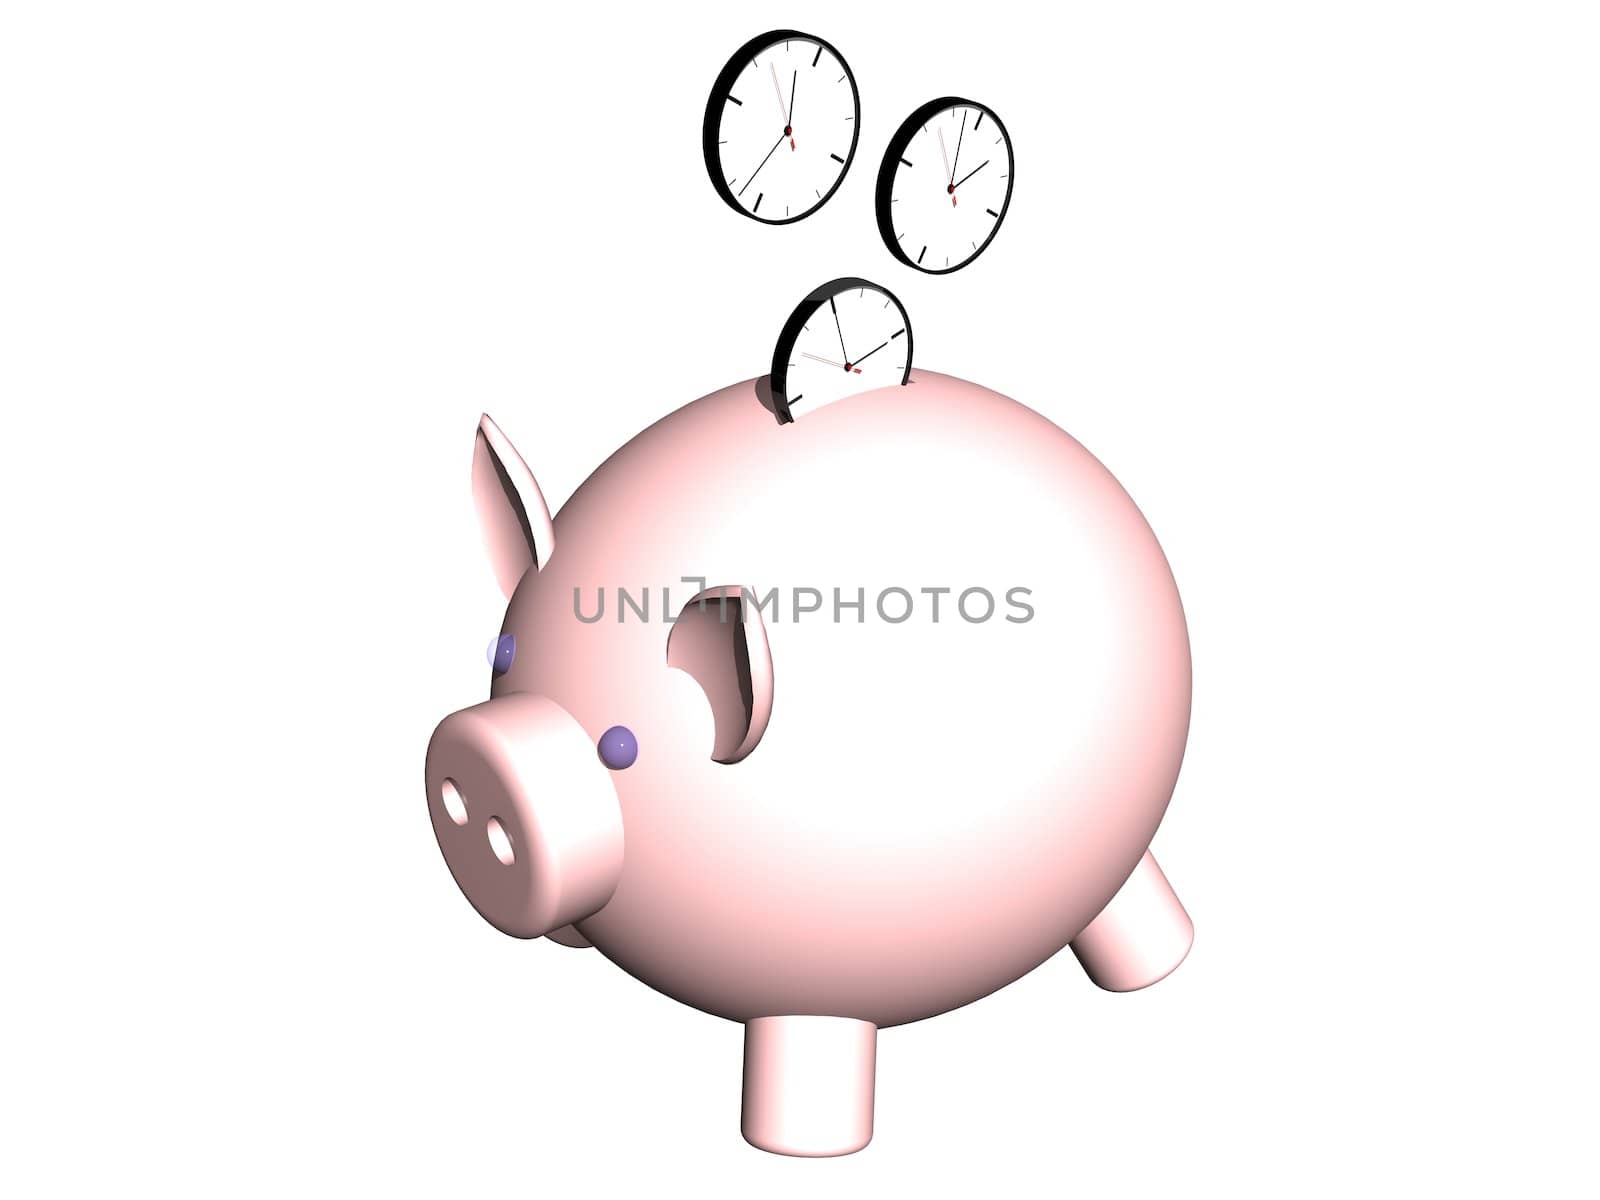 metaphor image of a piggybank whit clock coin